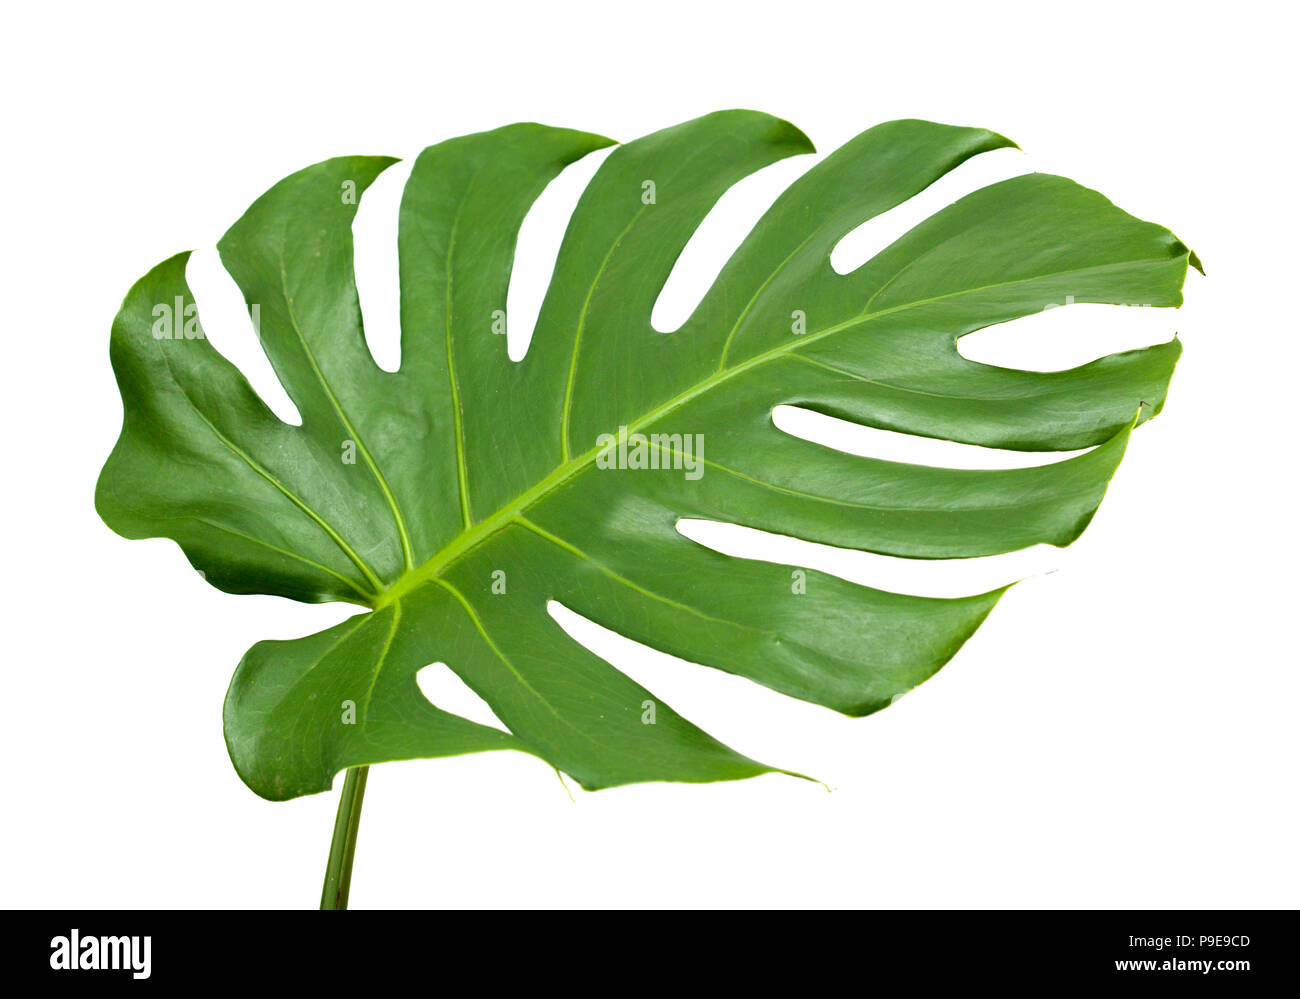 Große glänzende Blätter, monstera Pflanze isoliert auf weißem Hintergrund  Stockfotografie - Alamy